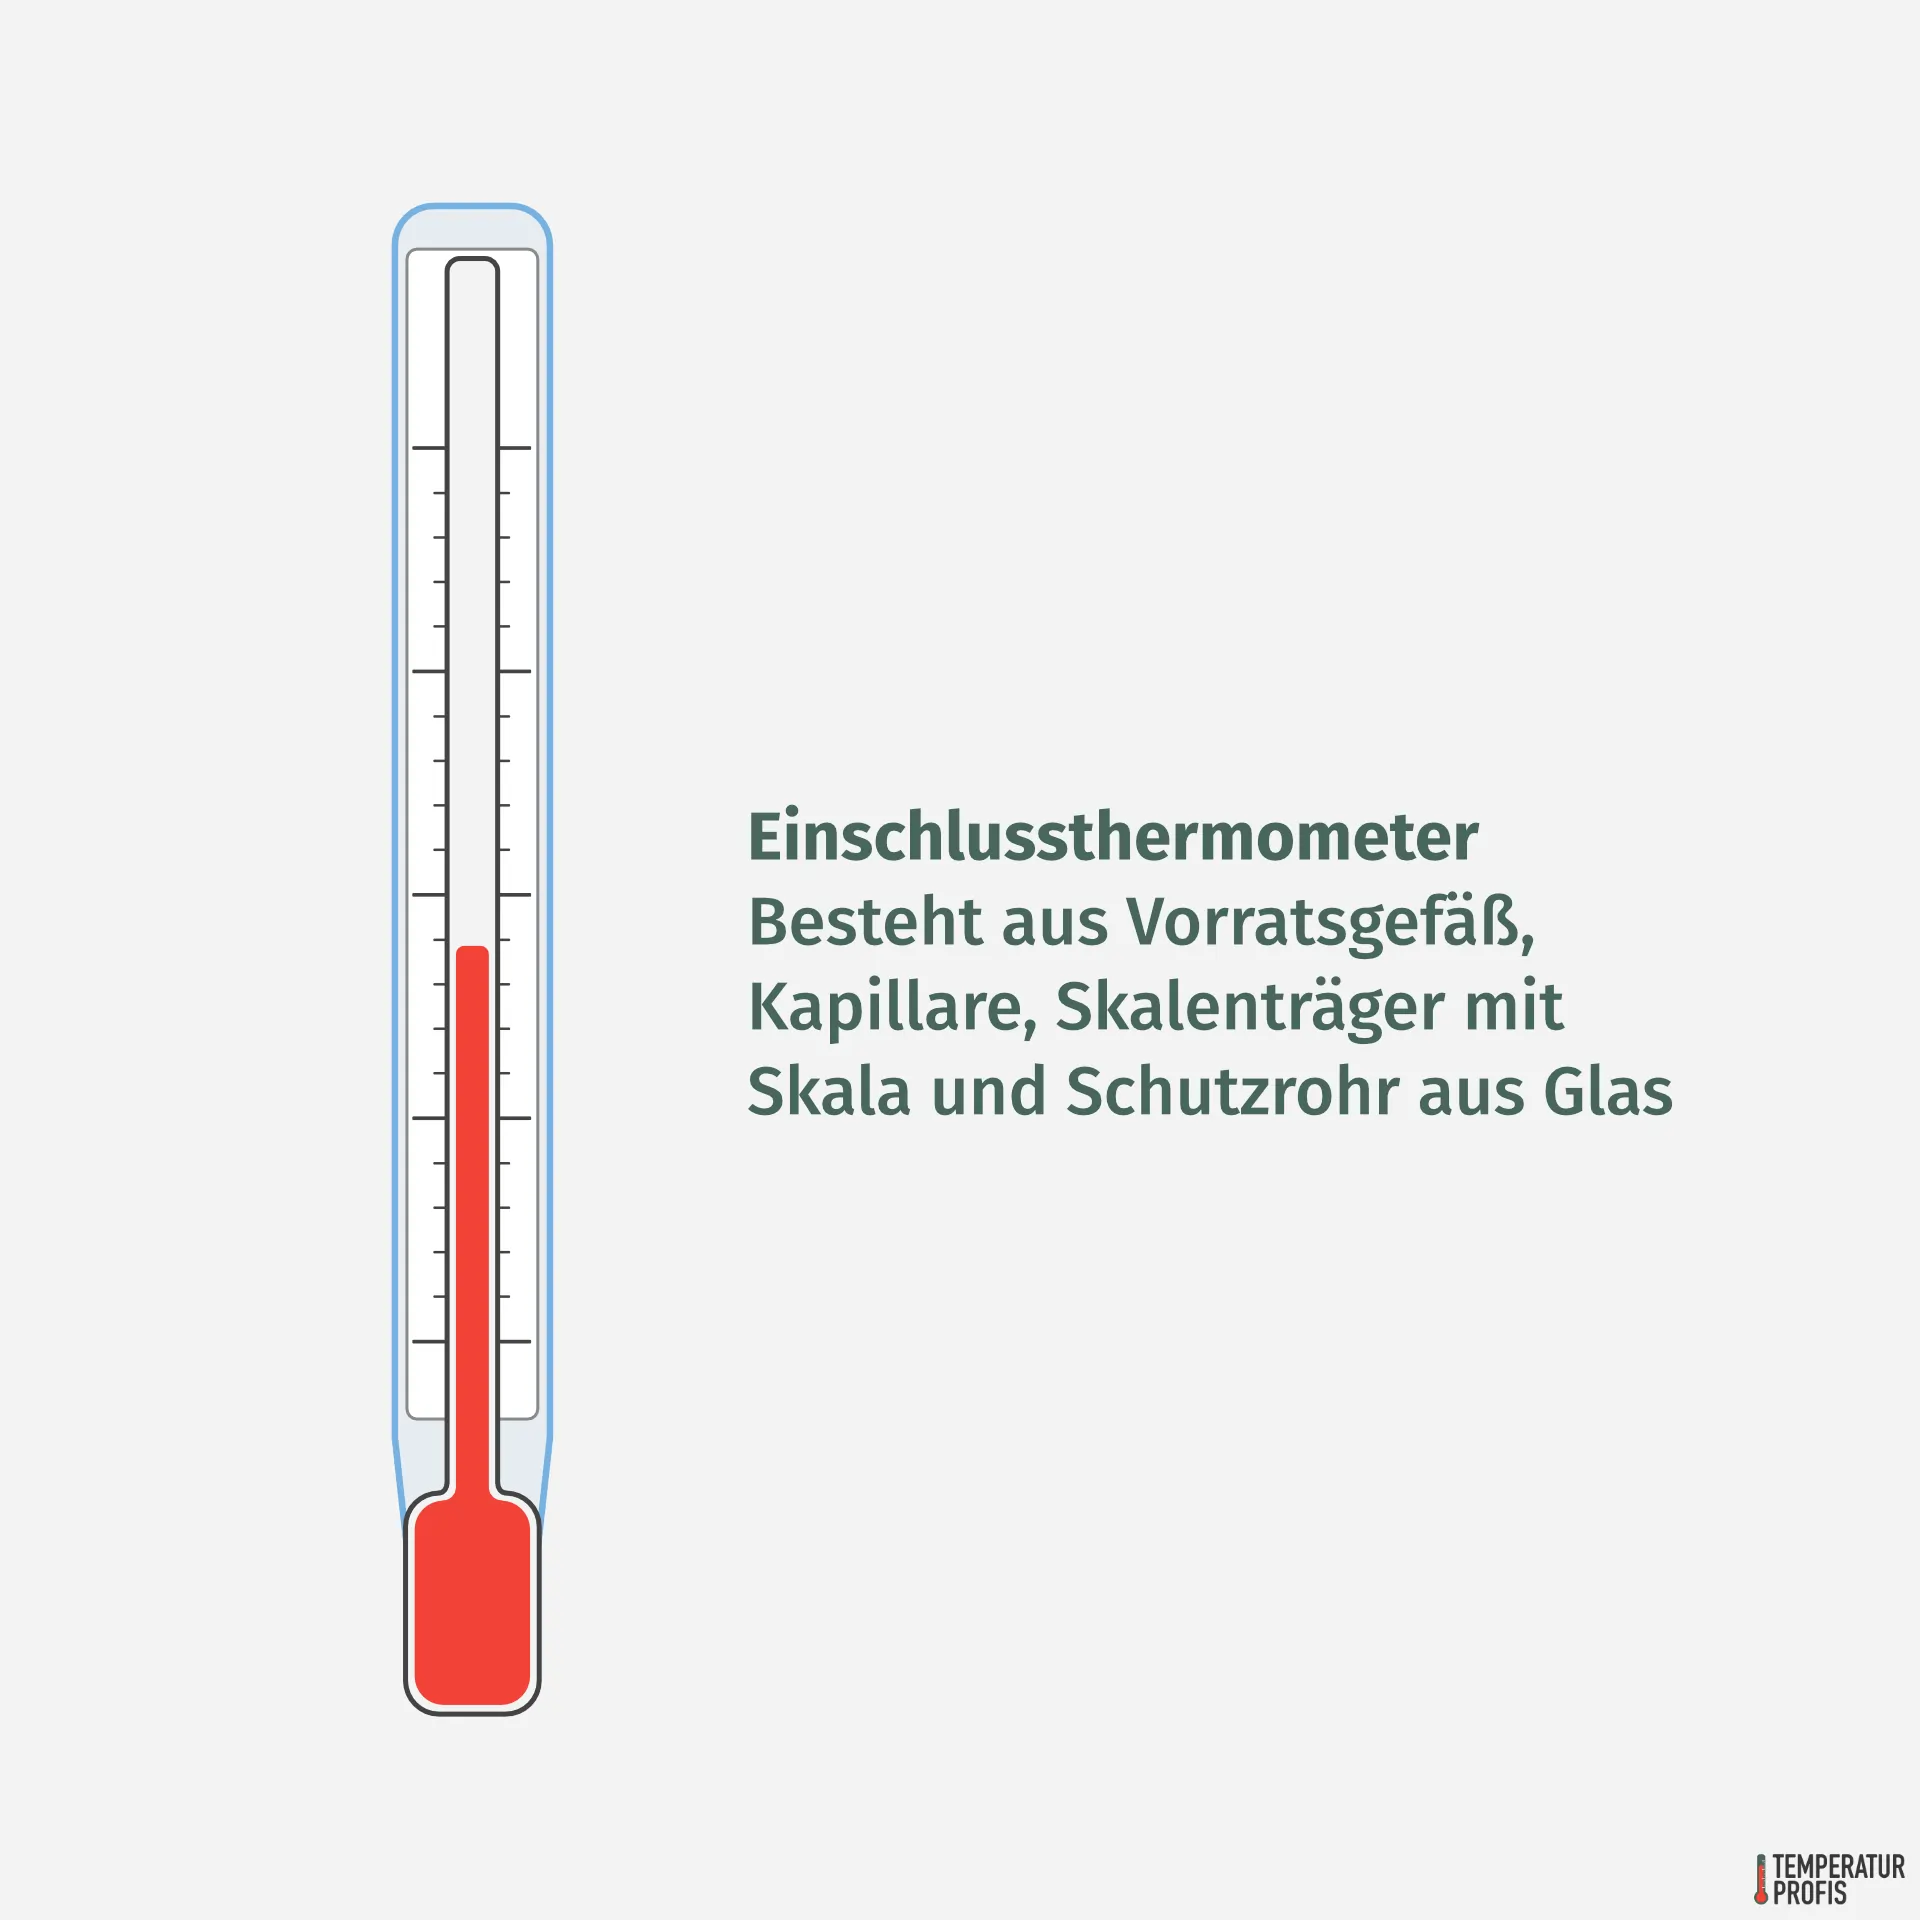 Thermometer Arten: Einschlusthermometer bestehen aus Vorratsgefäß, Kapillare, Skalenträger mit Skala und einem Schutzrohr aus Glas